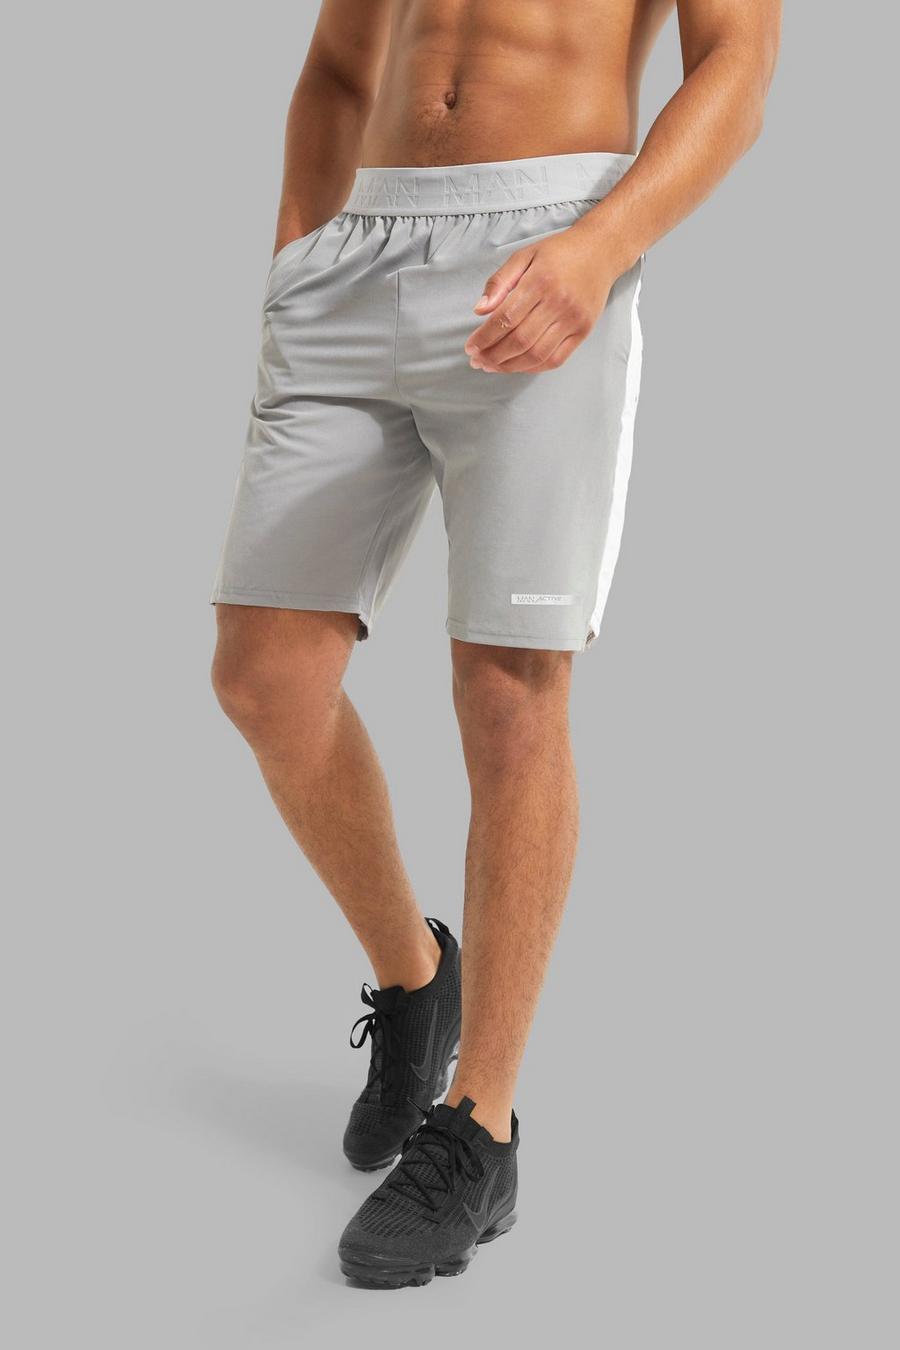 Pantaloncini Tall Man Active con pannelli in nylon, Grey grigio